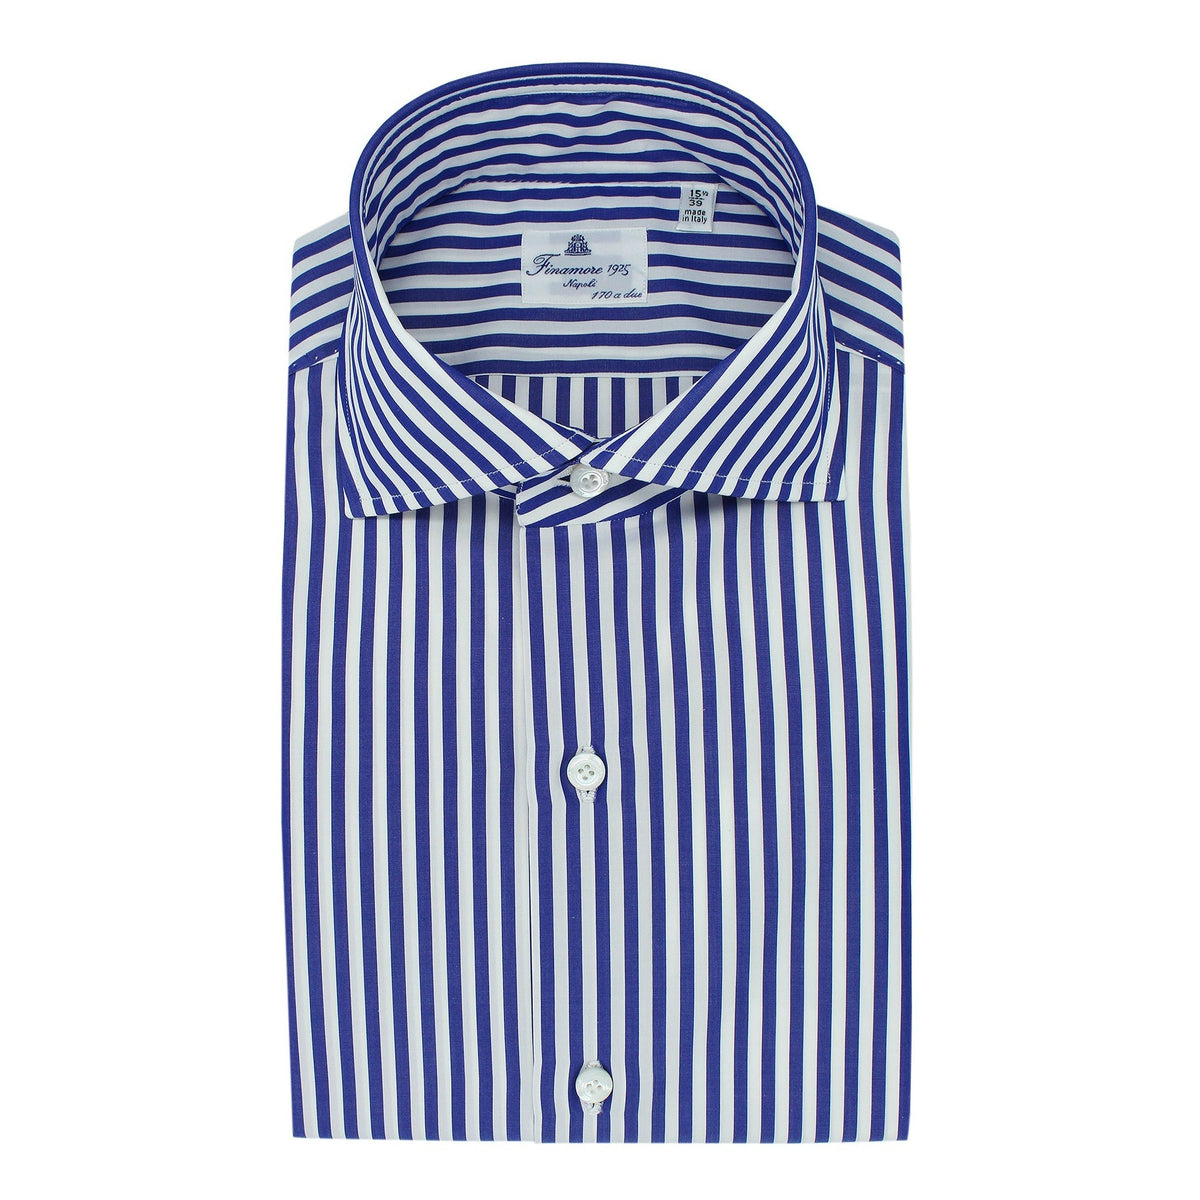 Dress shirt regular 170 a due striped blue Finamore 1925